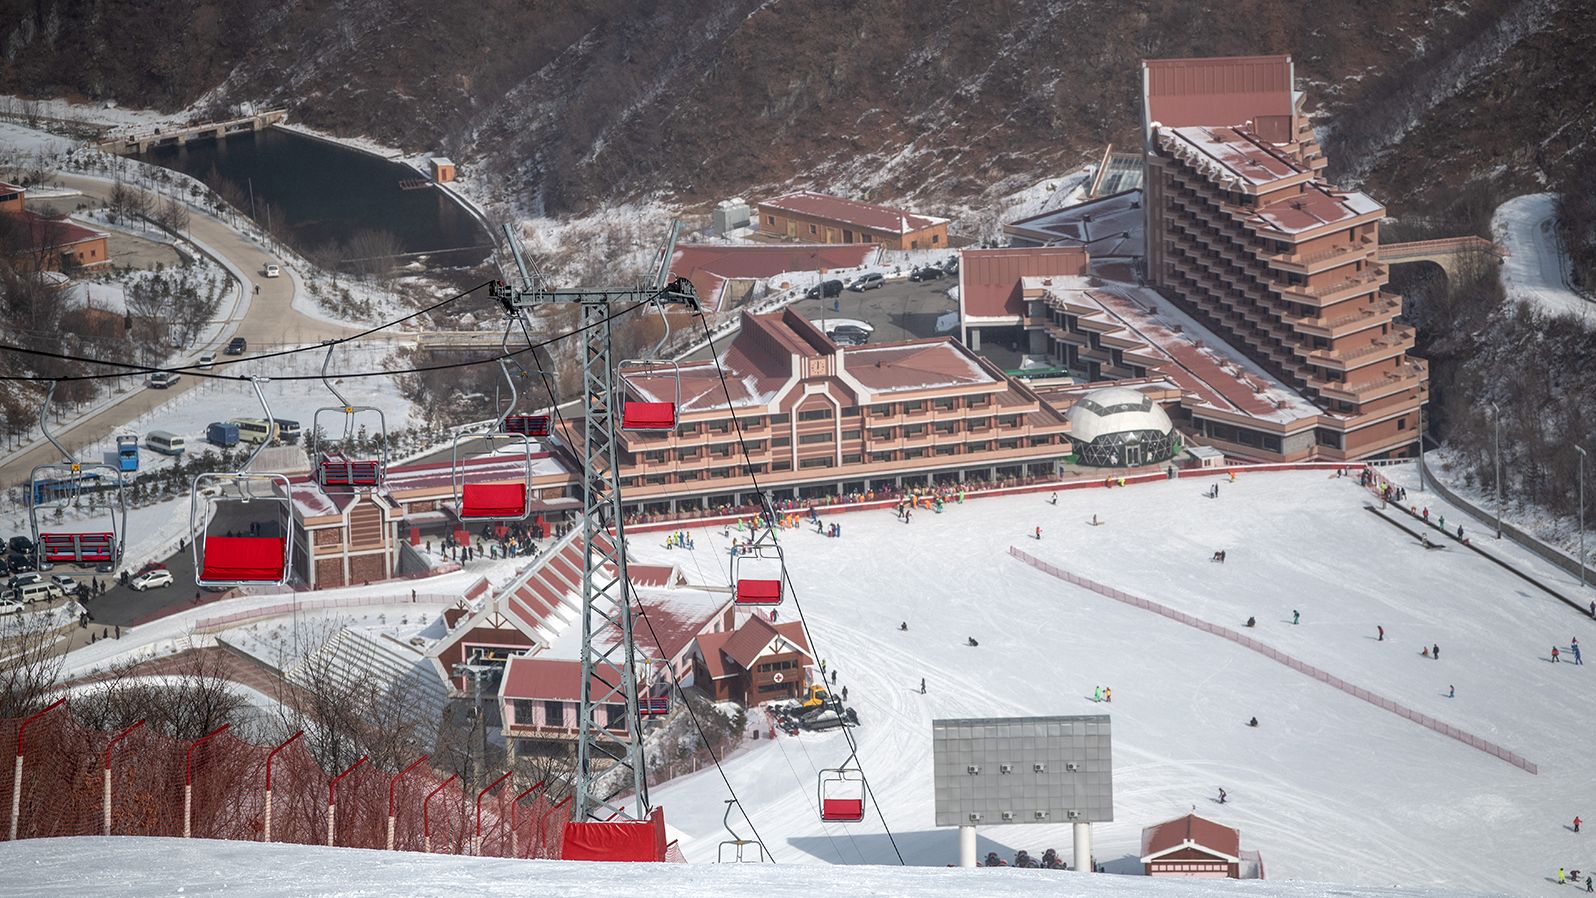 ¿Vuelve el turismo a Corea del Norte? Un anuncio de un viaje de esquí sugiere el regreso de los primeros turistas desde 2020